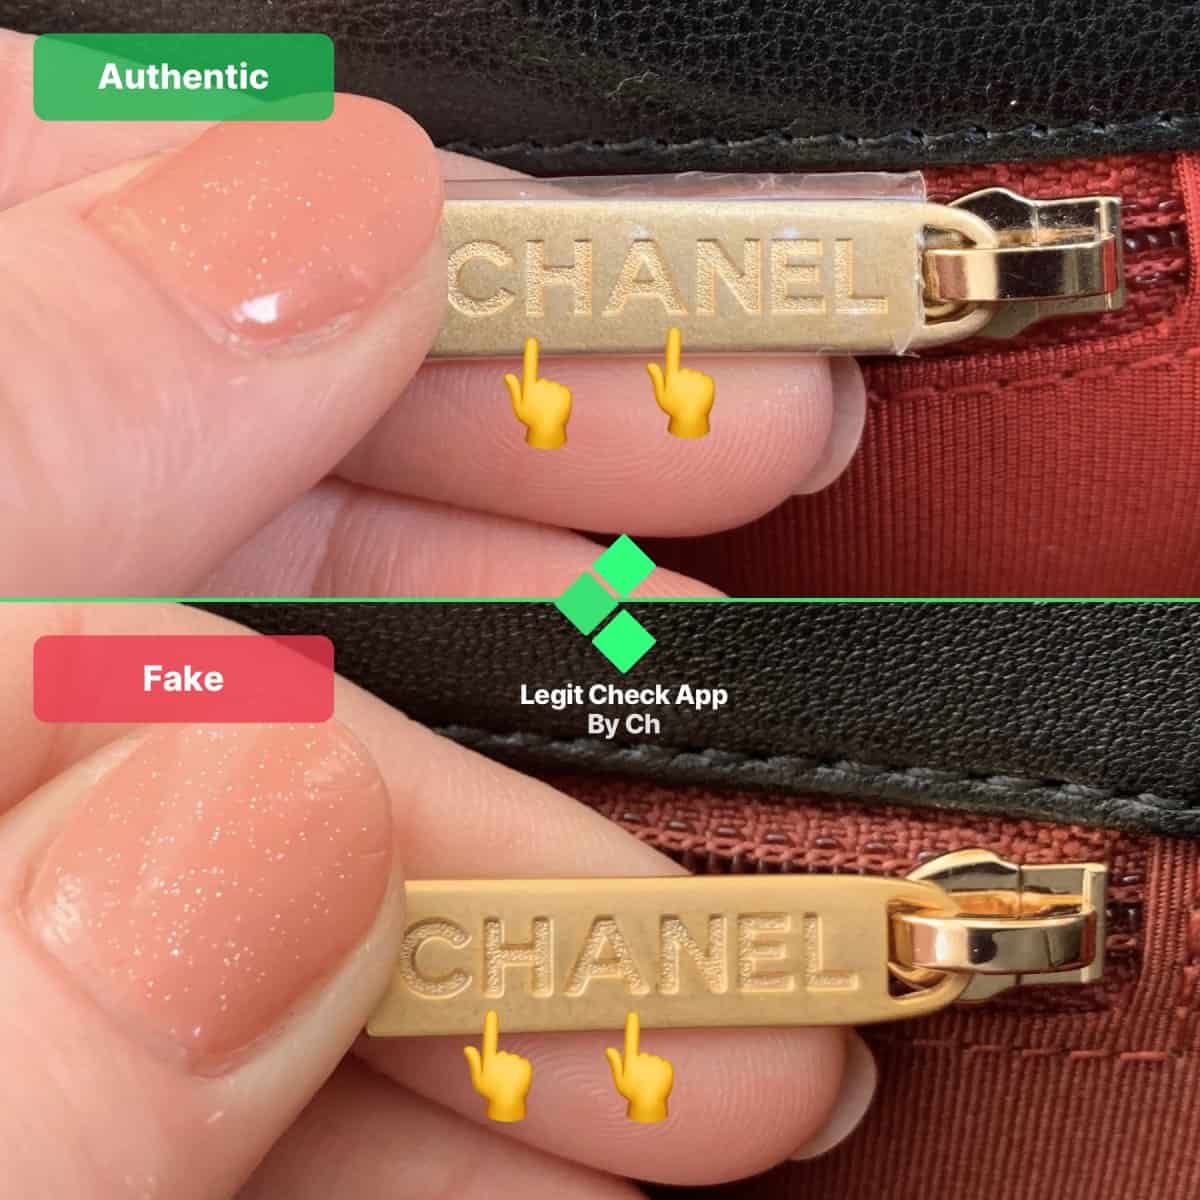 Real vs Fake Chanel 19 handle